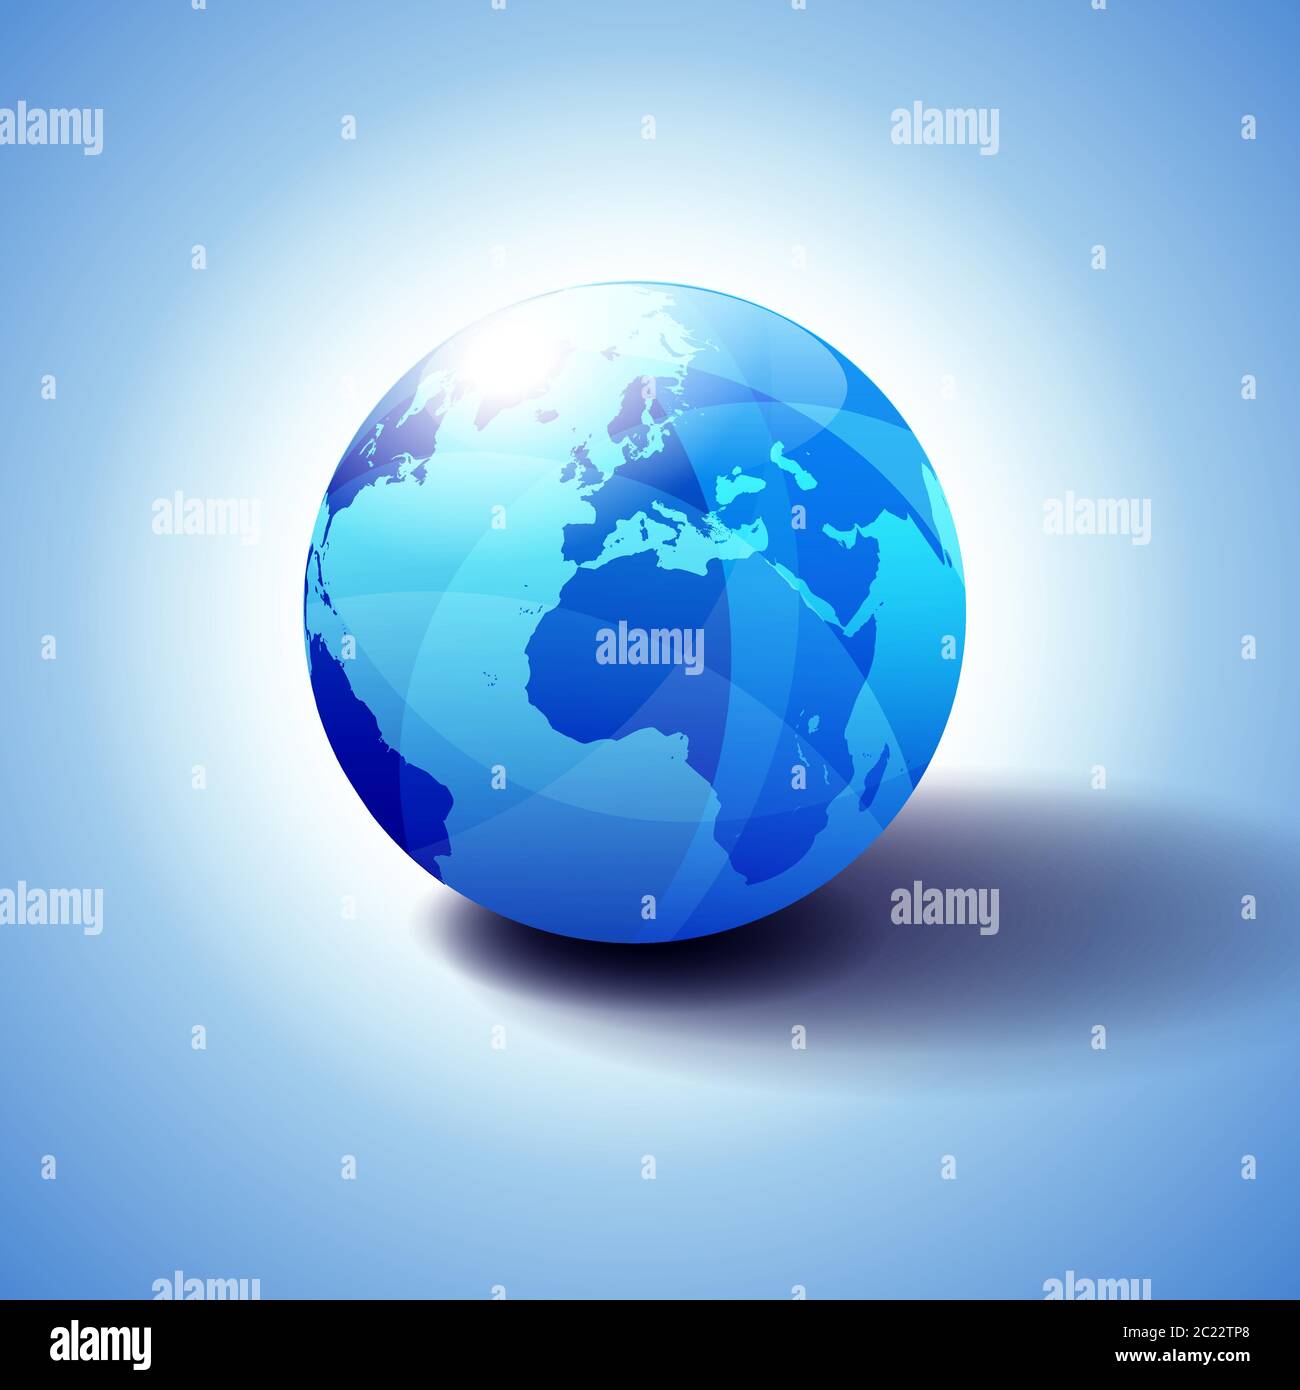 Europa e Africa, sfondo con l'icona Globe illustrazione 3D, sfera lucida e lucida con mappa globale in blu sottile per un'atmosfera trasparente. Illustrazione Vettoriale